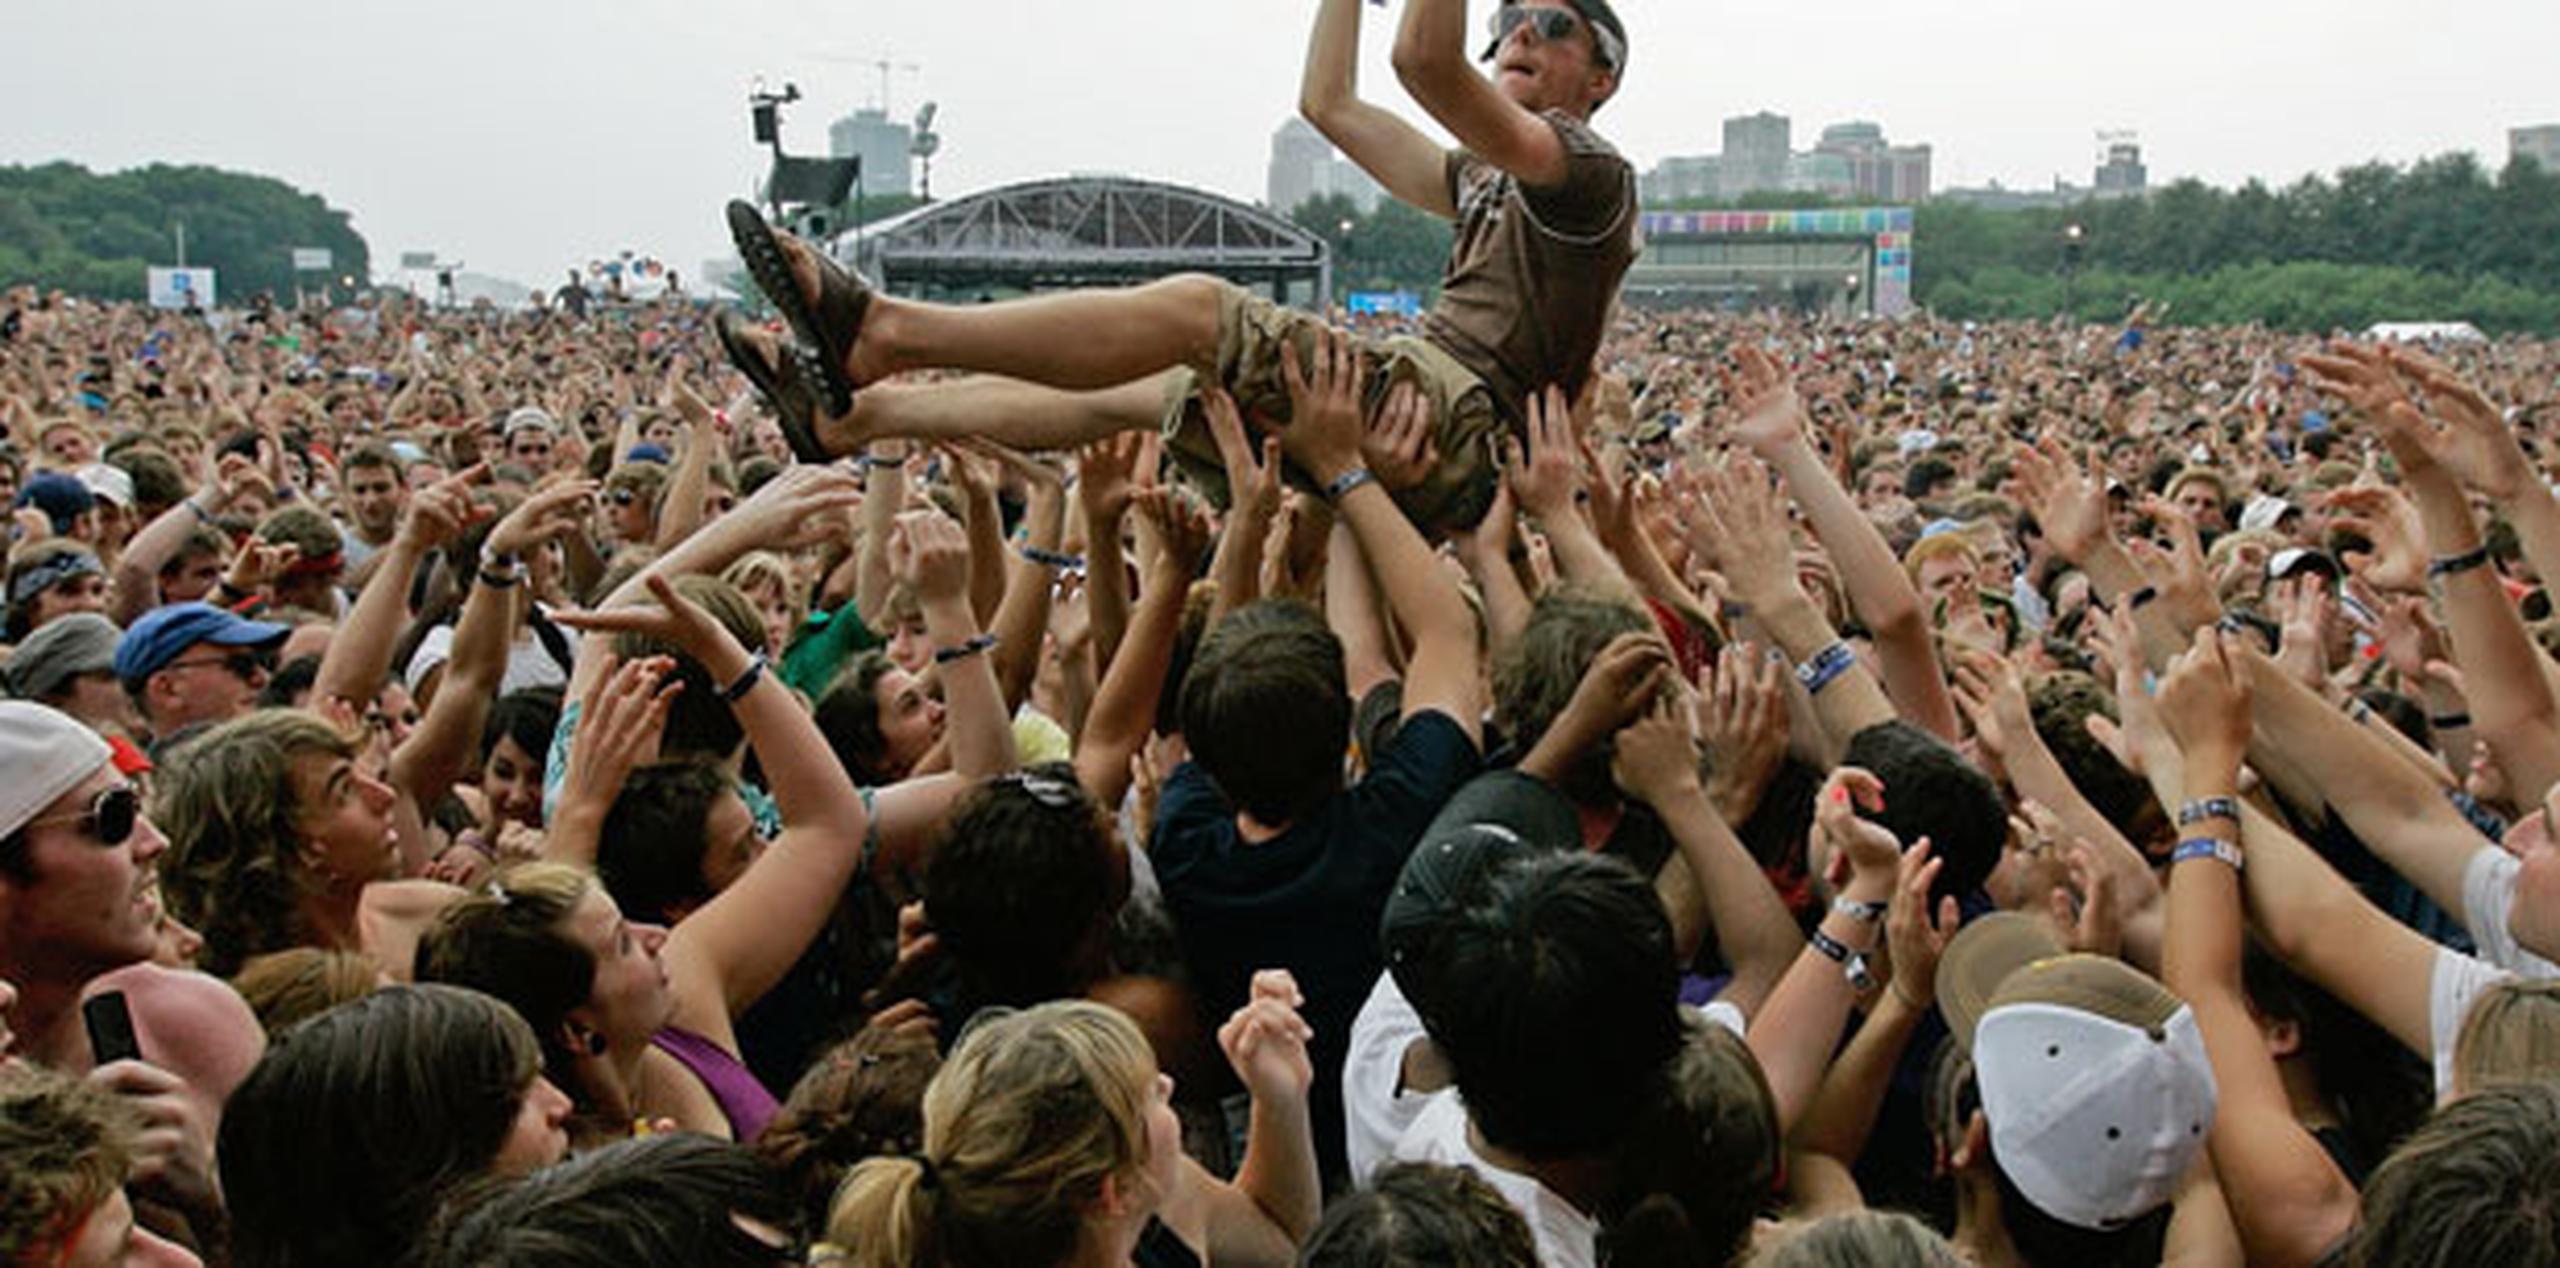 El fundador de Lollapalooza, Perry Farrell, dijo que Florence + the Machine, Bassnectar y The Weeknd también participarán en el evento. (Archivo)